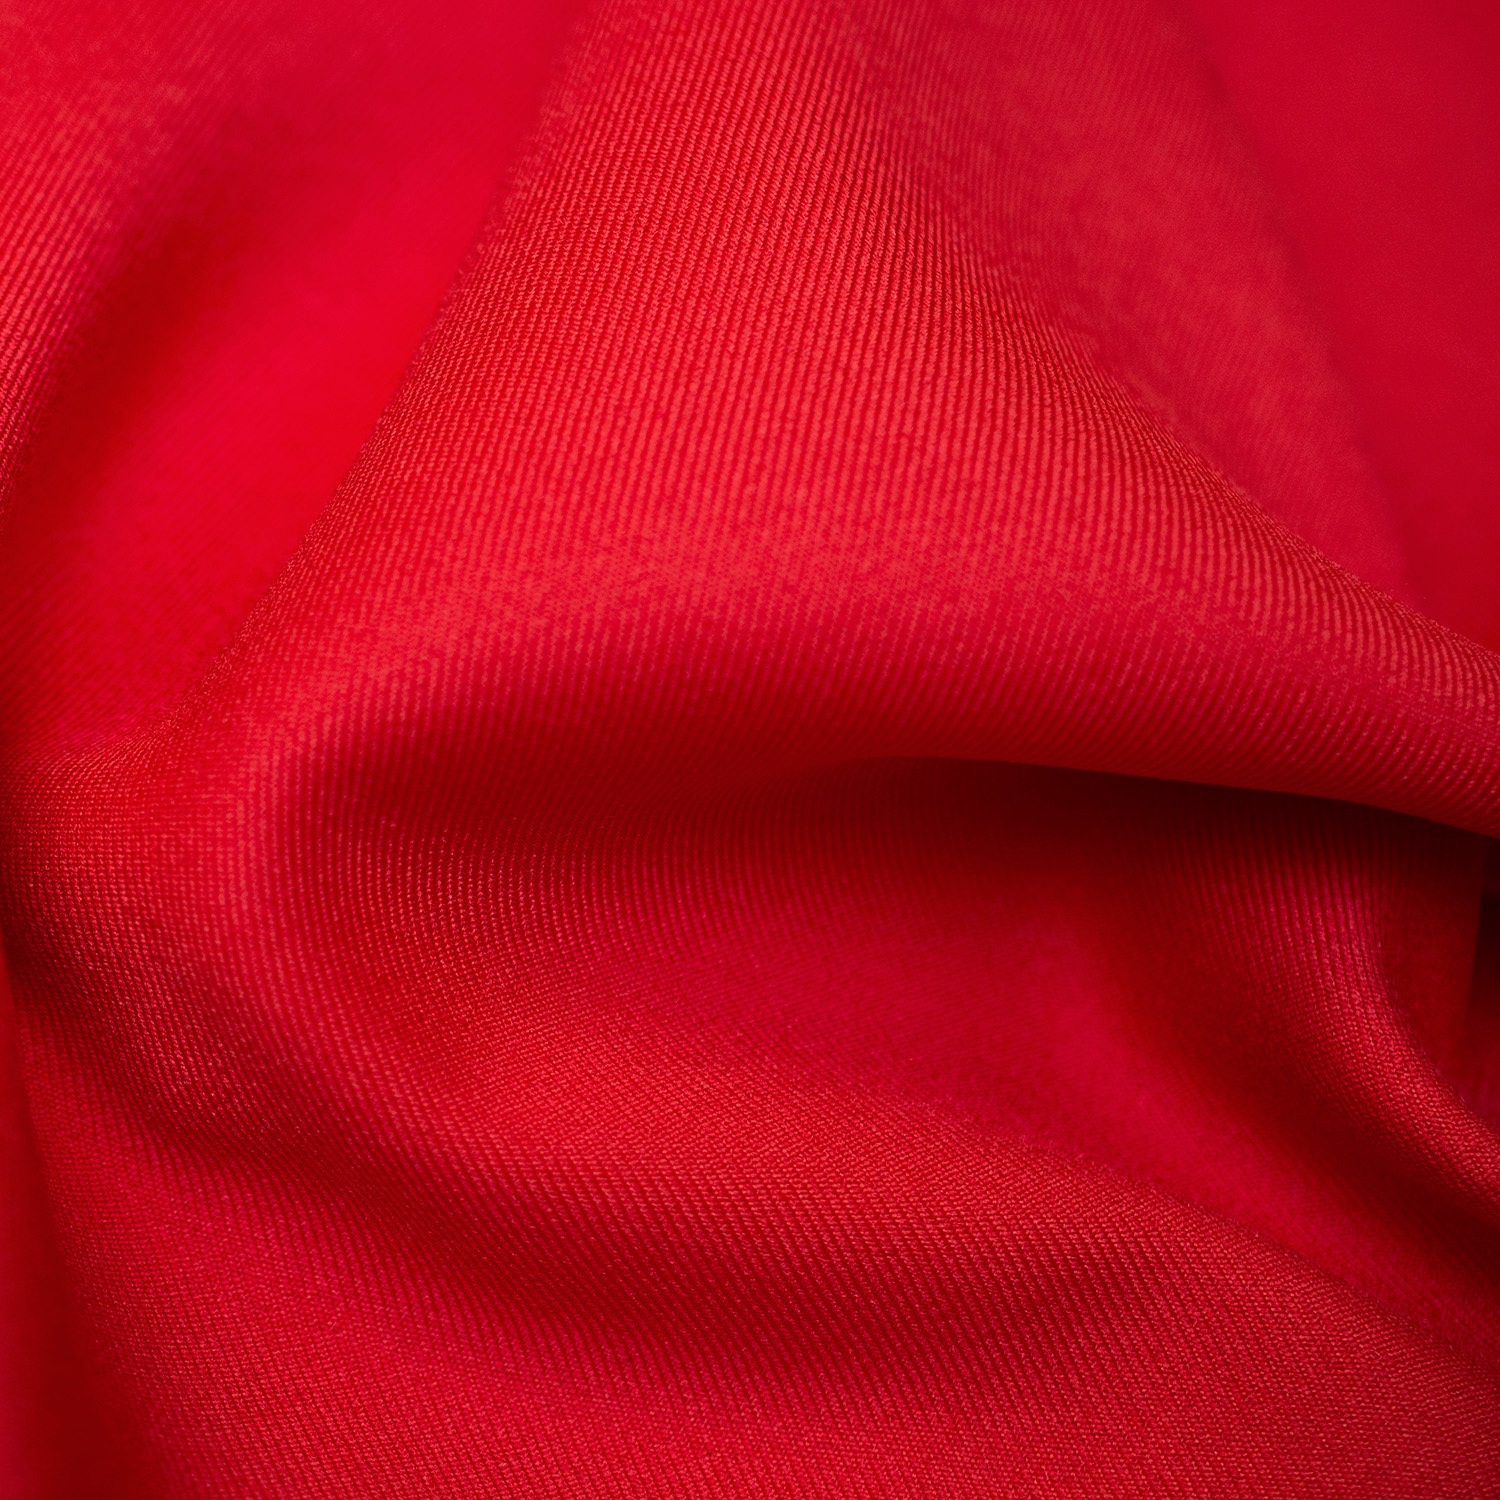 Tkanina Elana o splocie gabardynowym, w jednolitym kolorze.